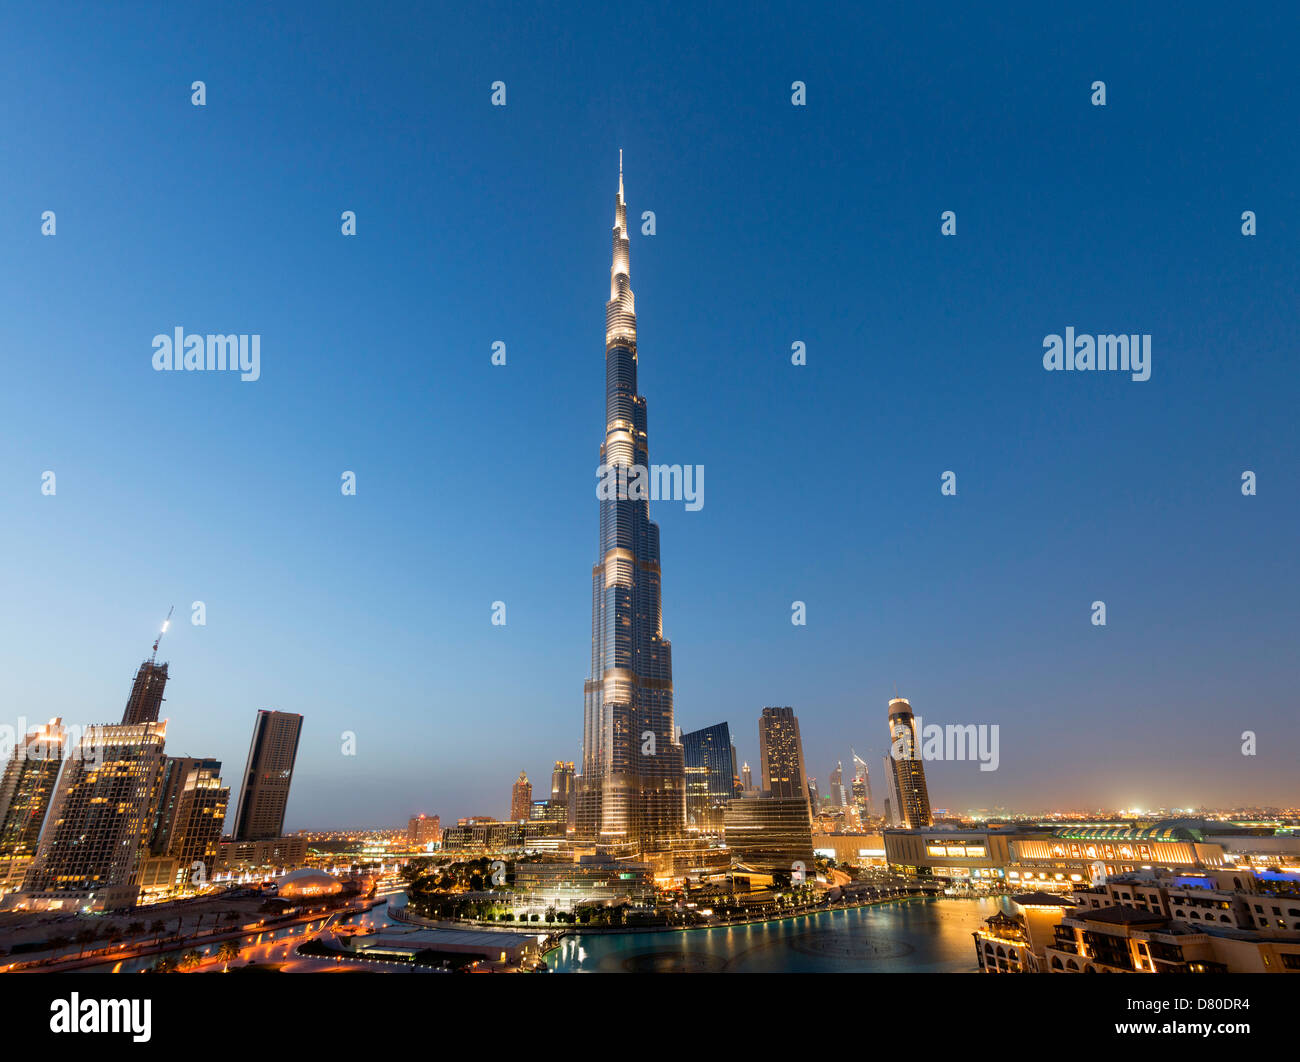 Vue nocturne de la tour Burj Khalifa, plus haut bâtiment du monde à Dubaï Émirats Arabes Unis Banque D'Images